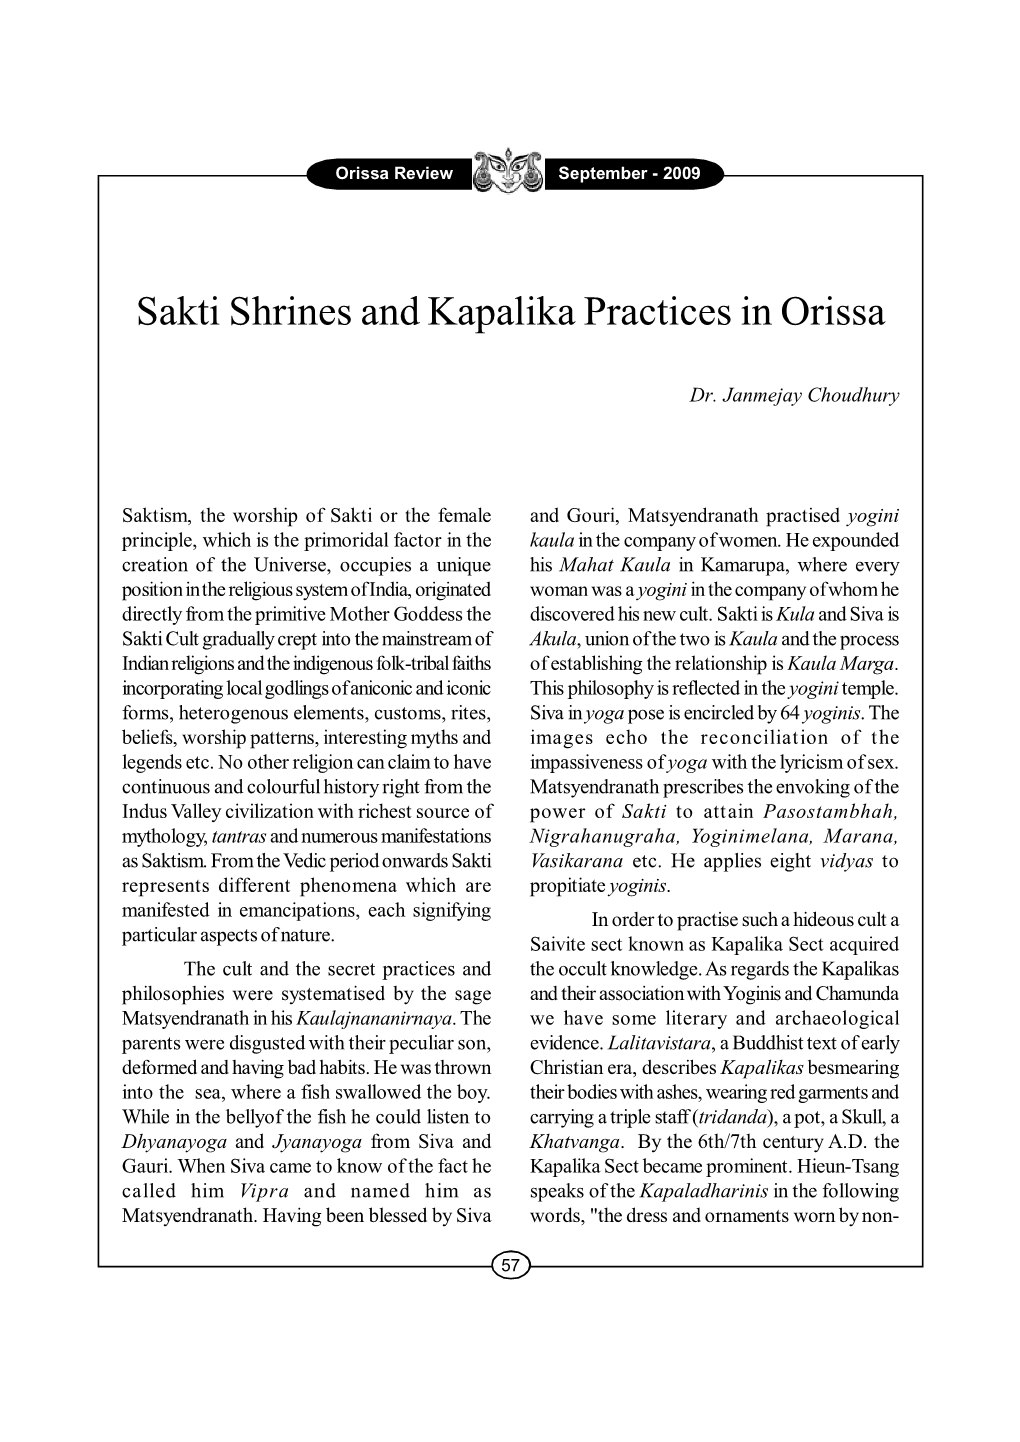 Sakti Shrines and Kapalika Practices in Orissa